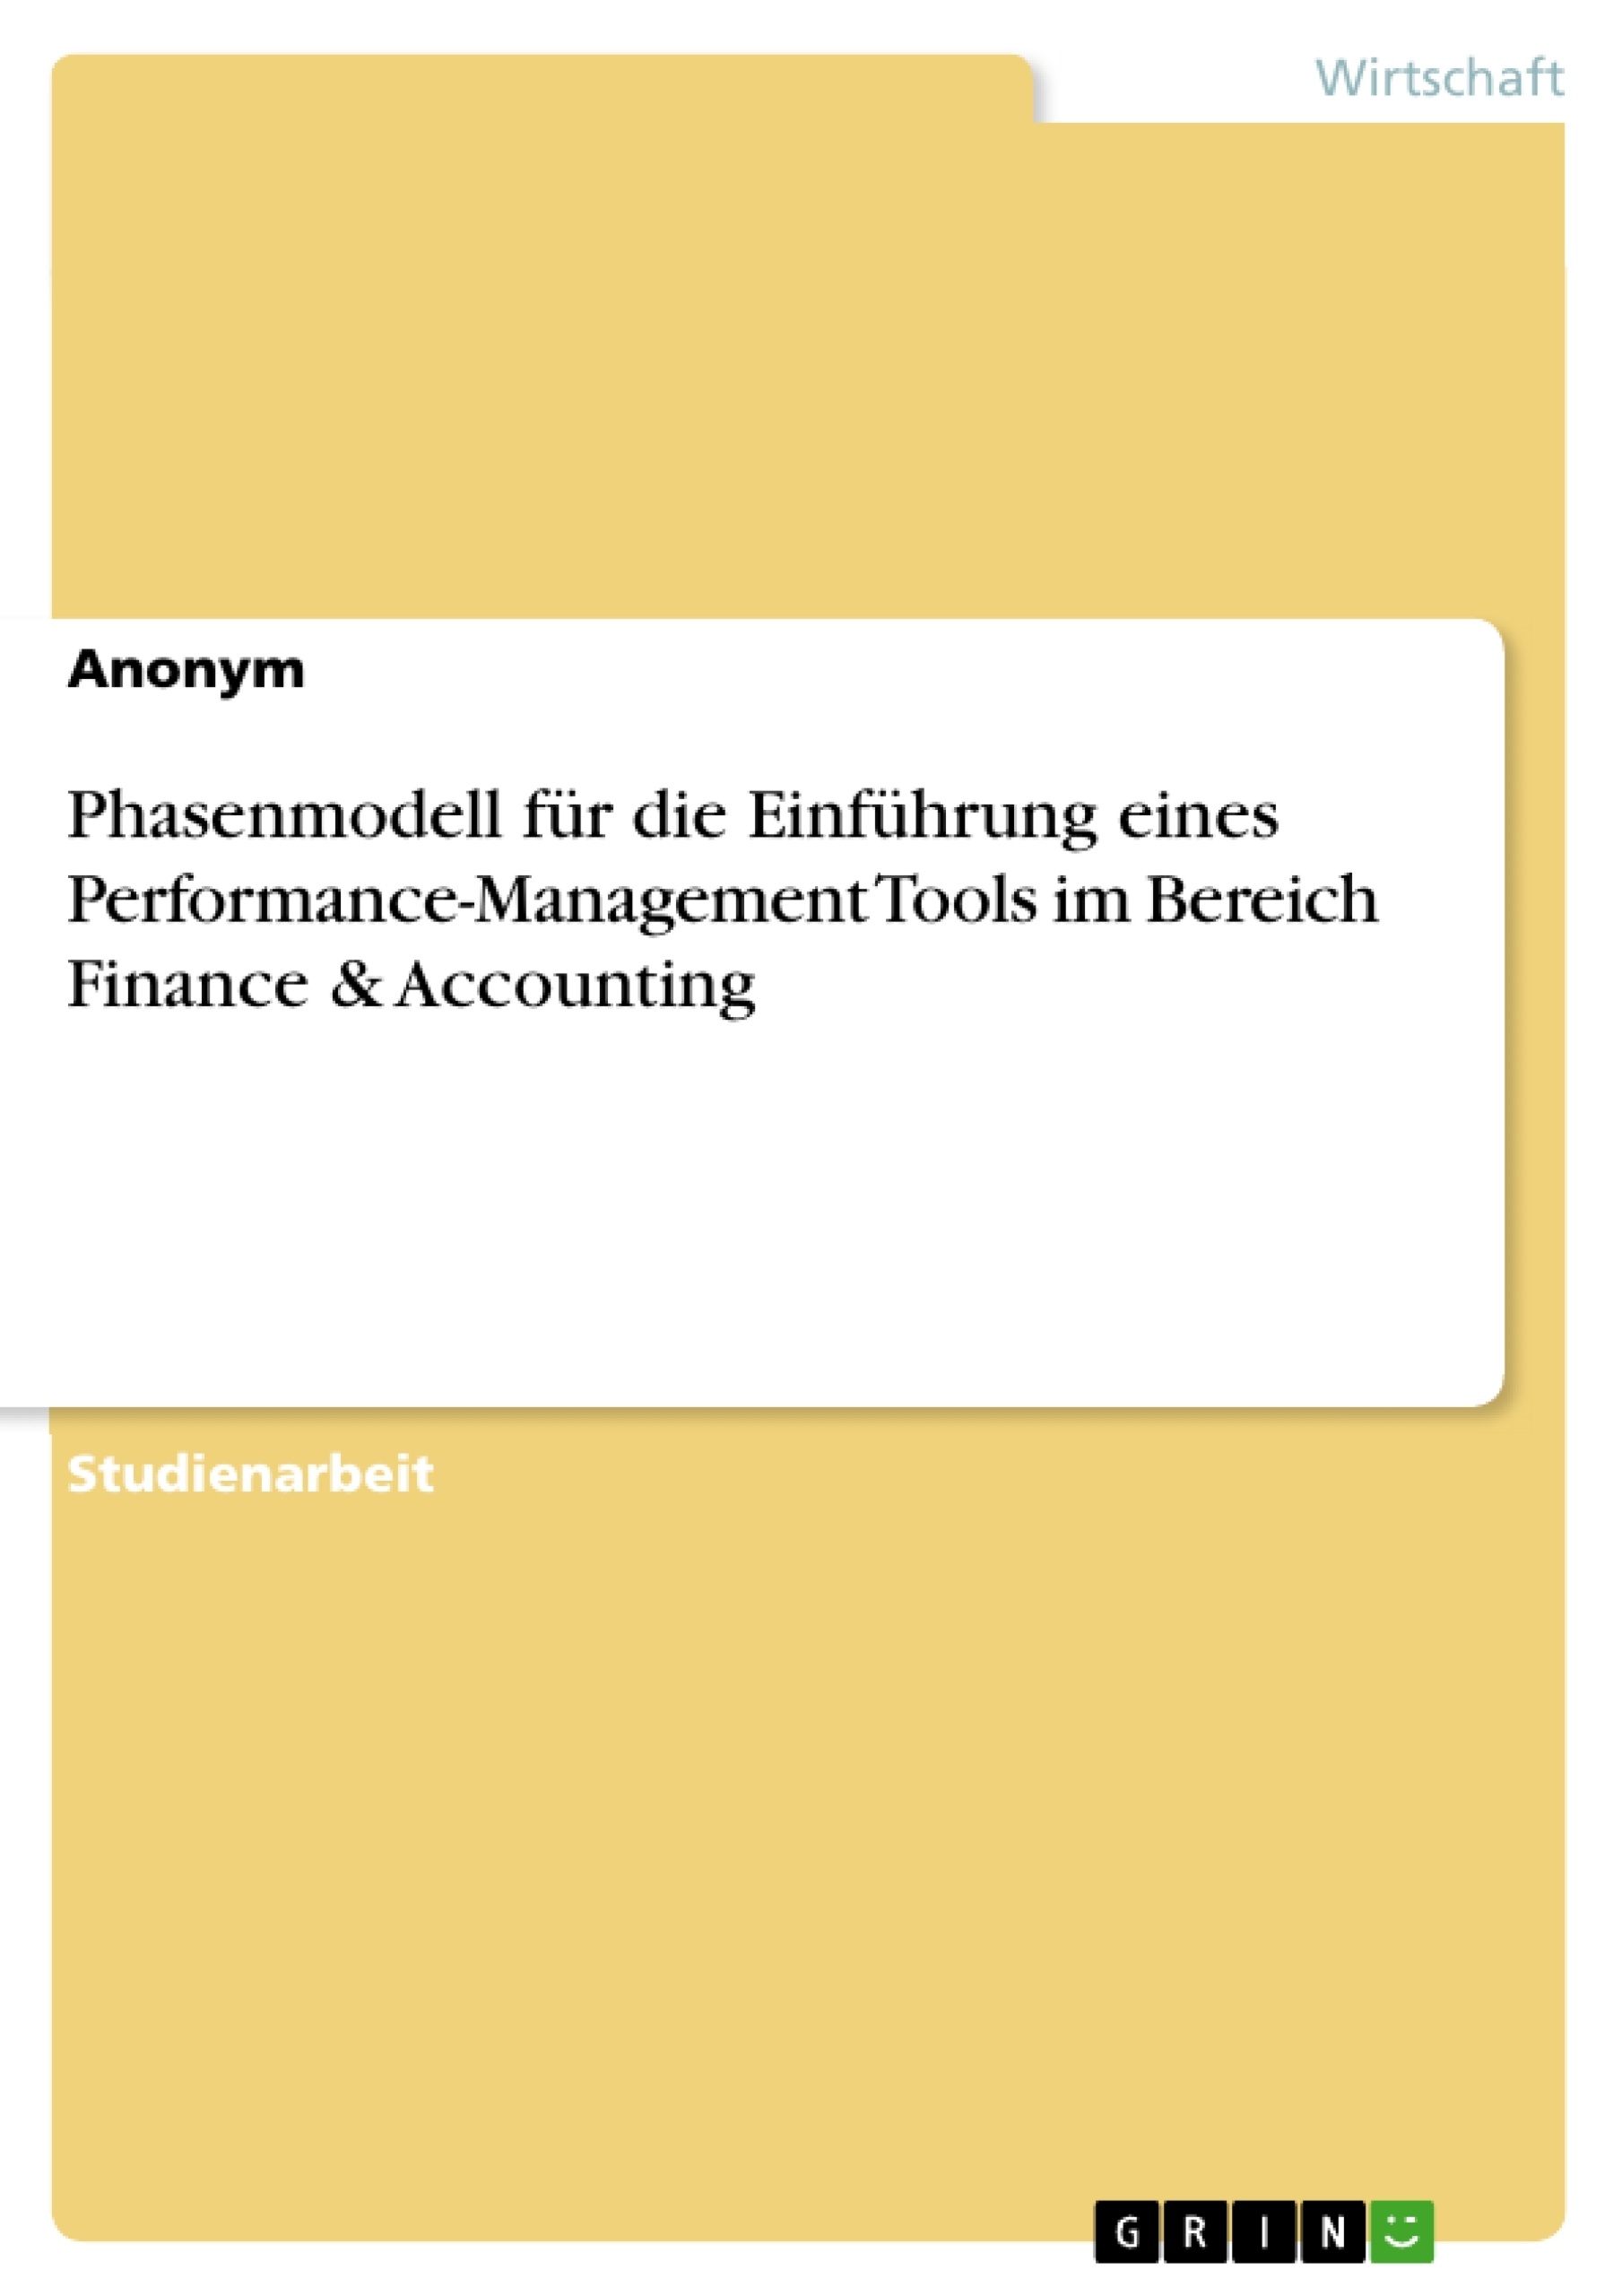 Title: Phasenmodell für die Einführung eines Performance-Management Tools im Bereich Finance & Accounting